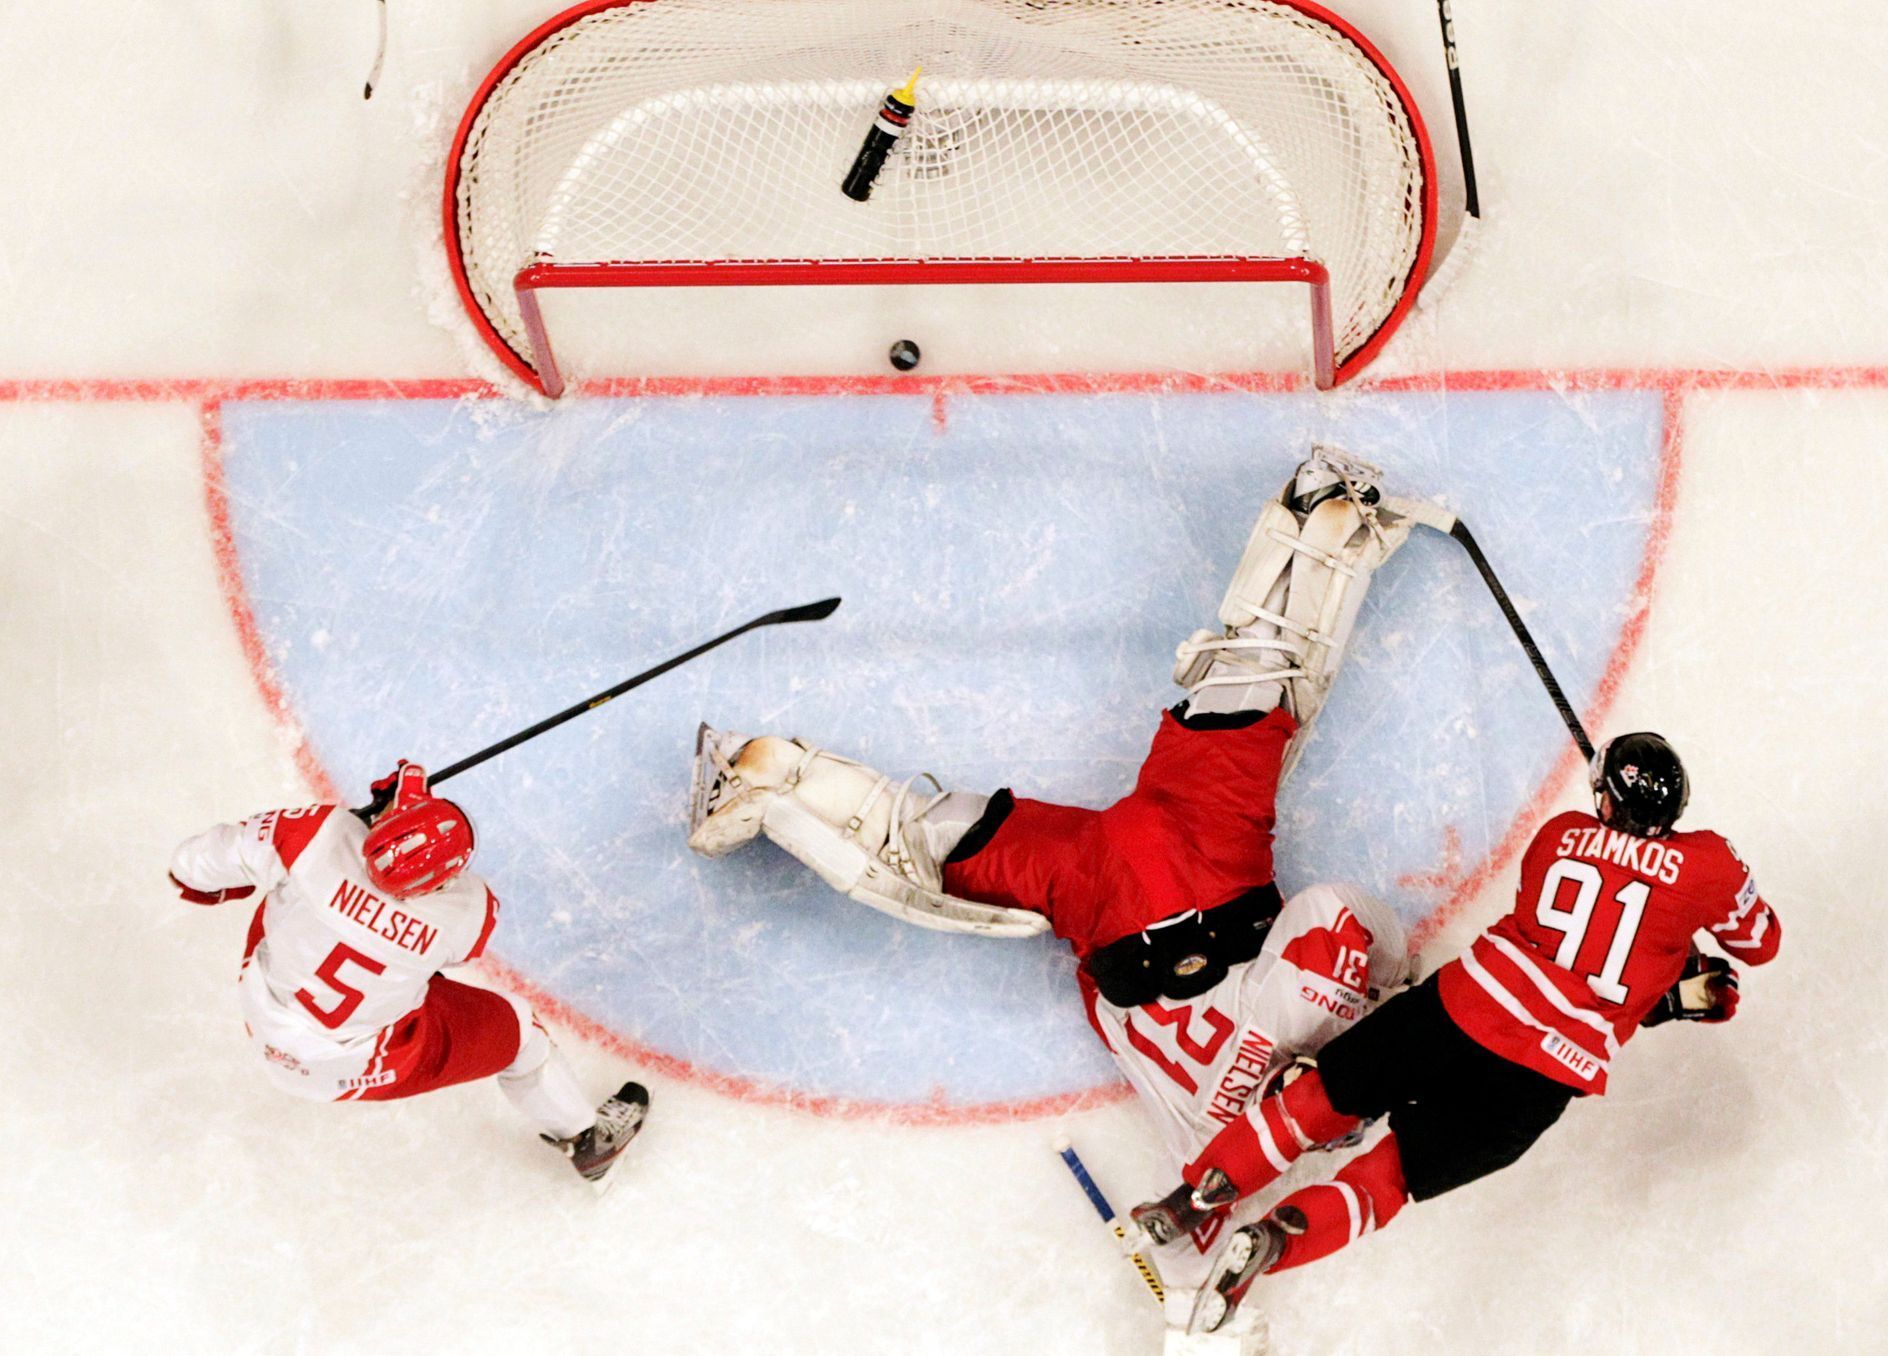 MS v hokeji 2013, Kanada - Dánsko: Steven Stamkos - Daniel Nielsen (5) a Simon Nielsen